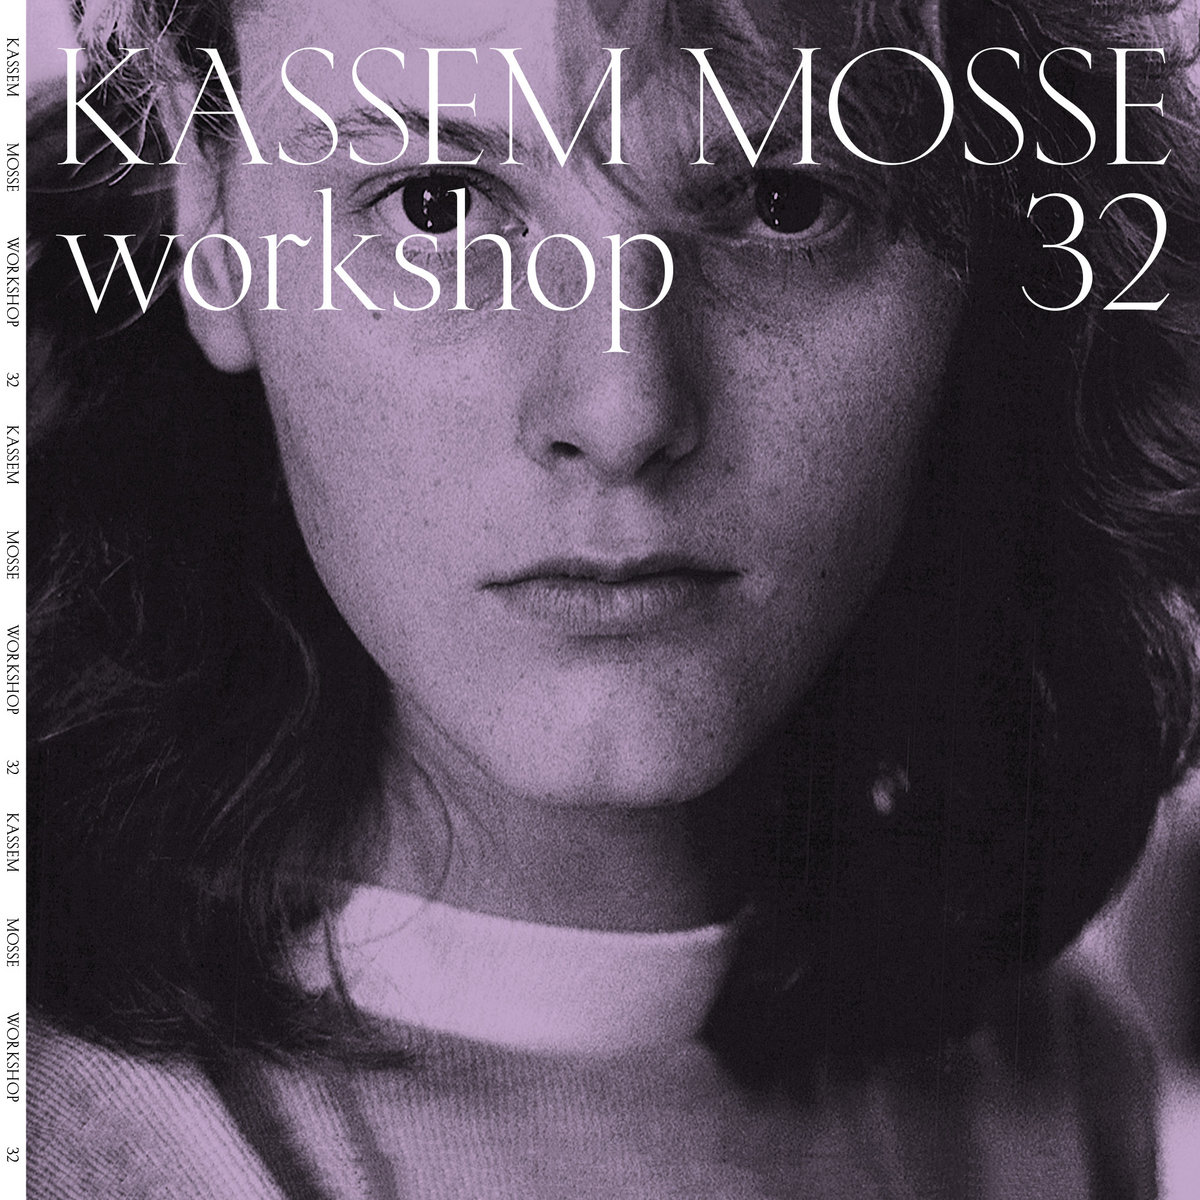 Kassem Mosse – Workshop 32 [Hi-RES]